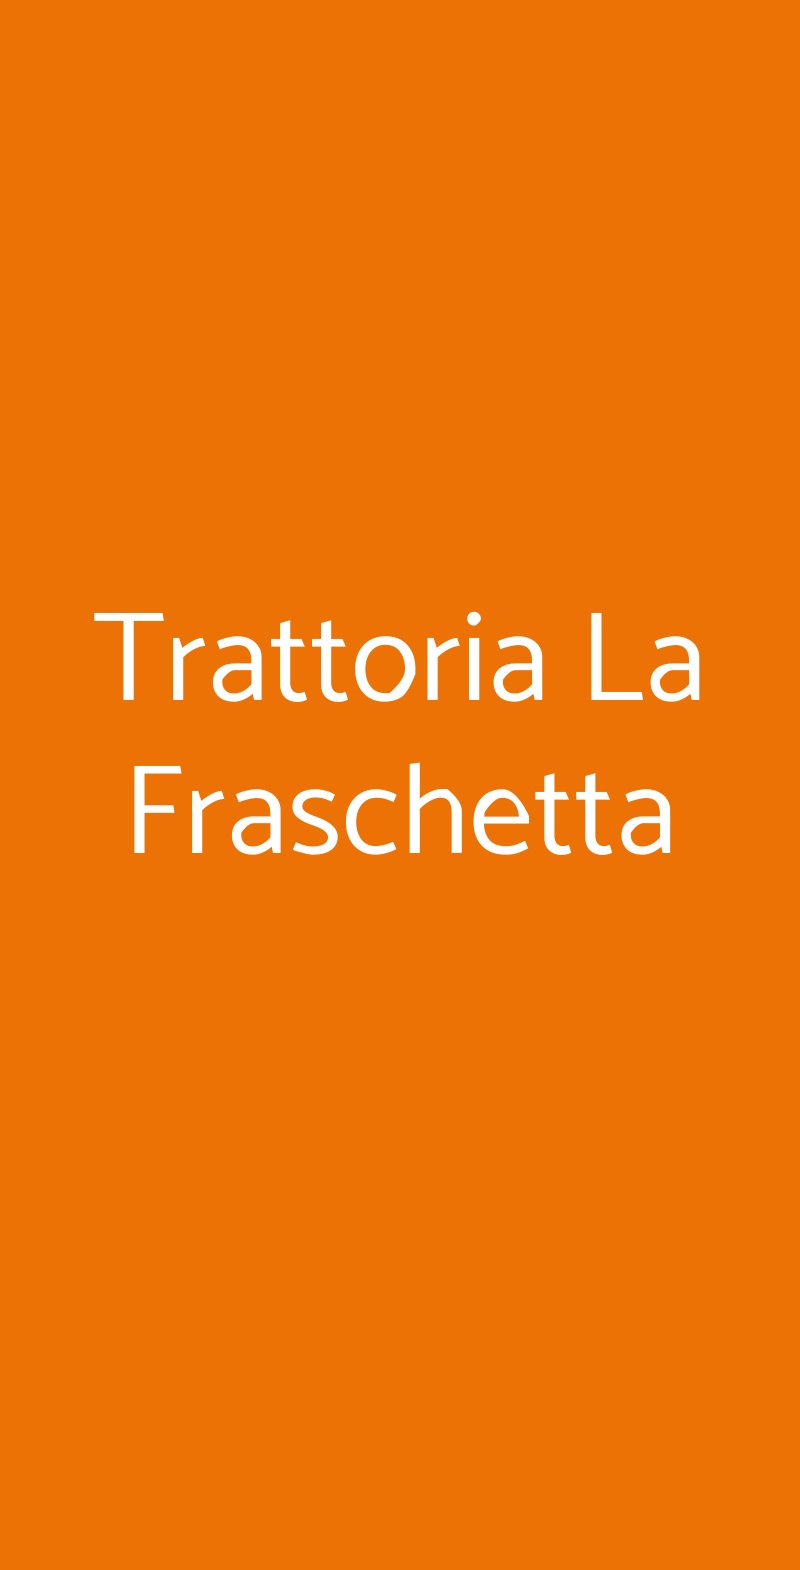 Trattoria La Fraschetta Roma menù 1 pagina